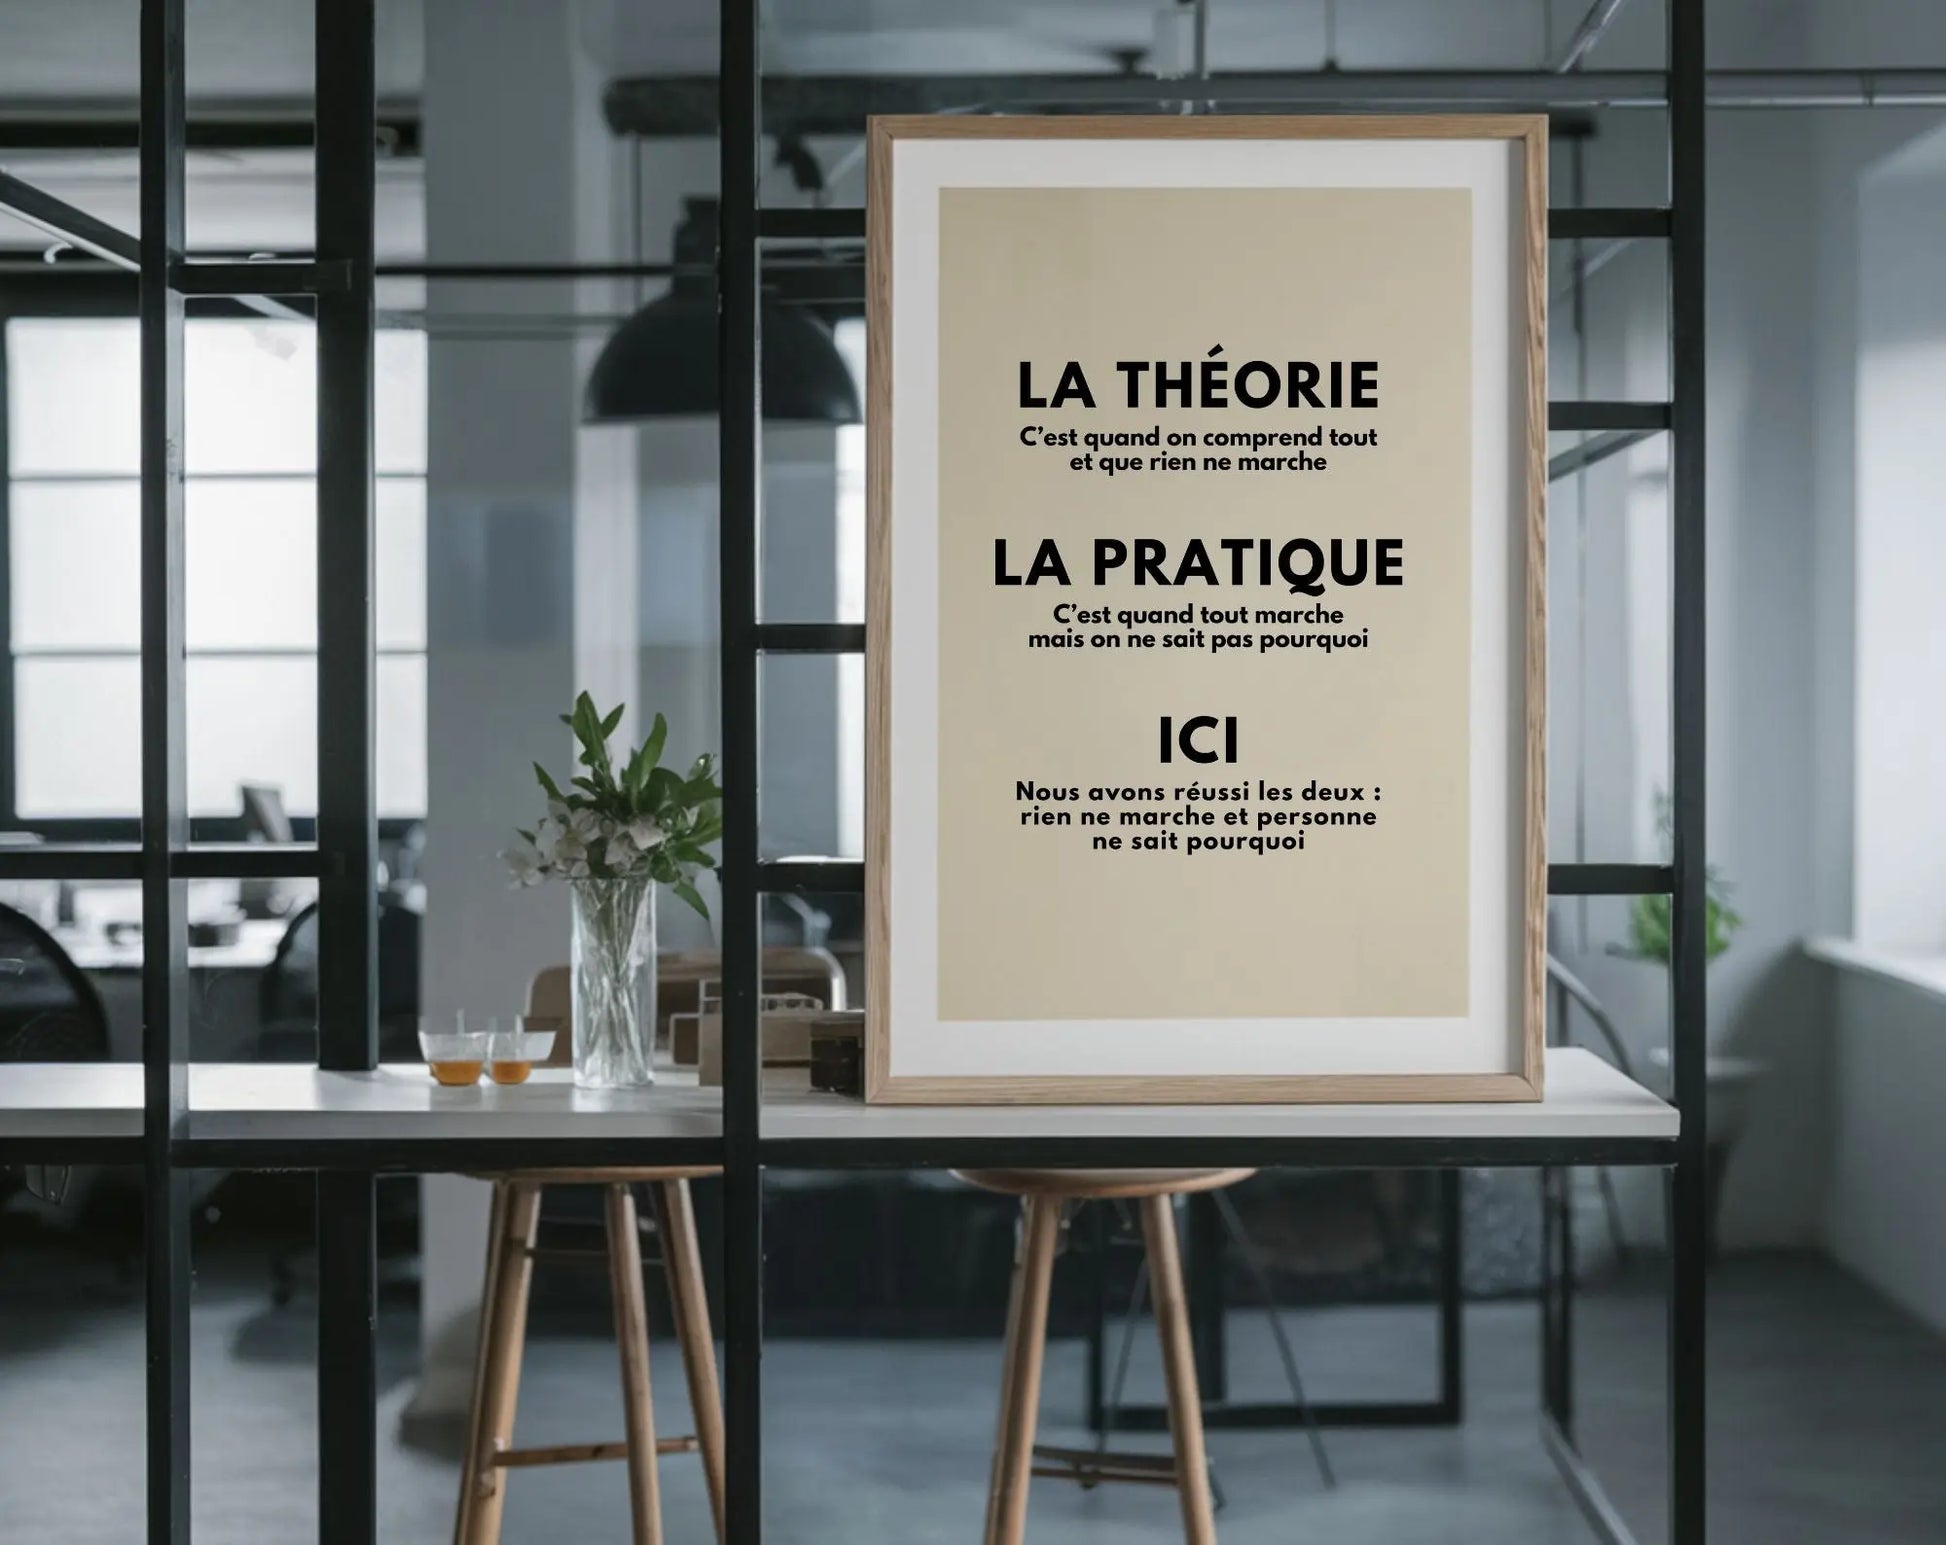 Affiche bureau La Théorie et la pratique – Humour au travail FLTMfrance